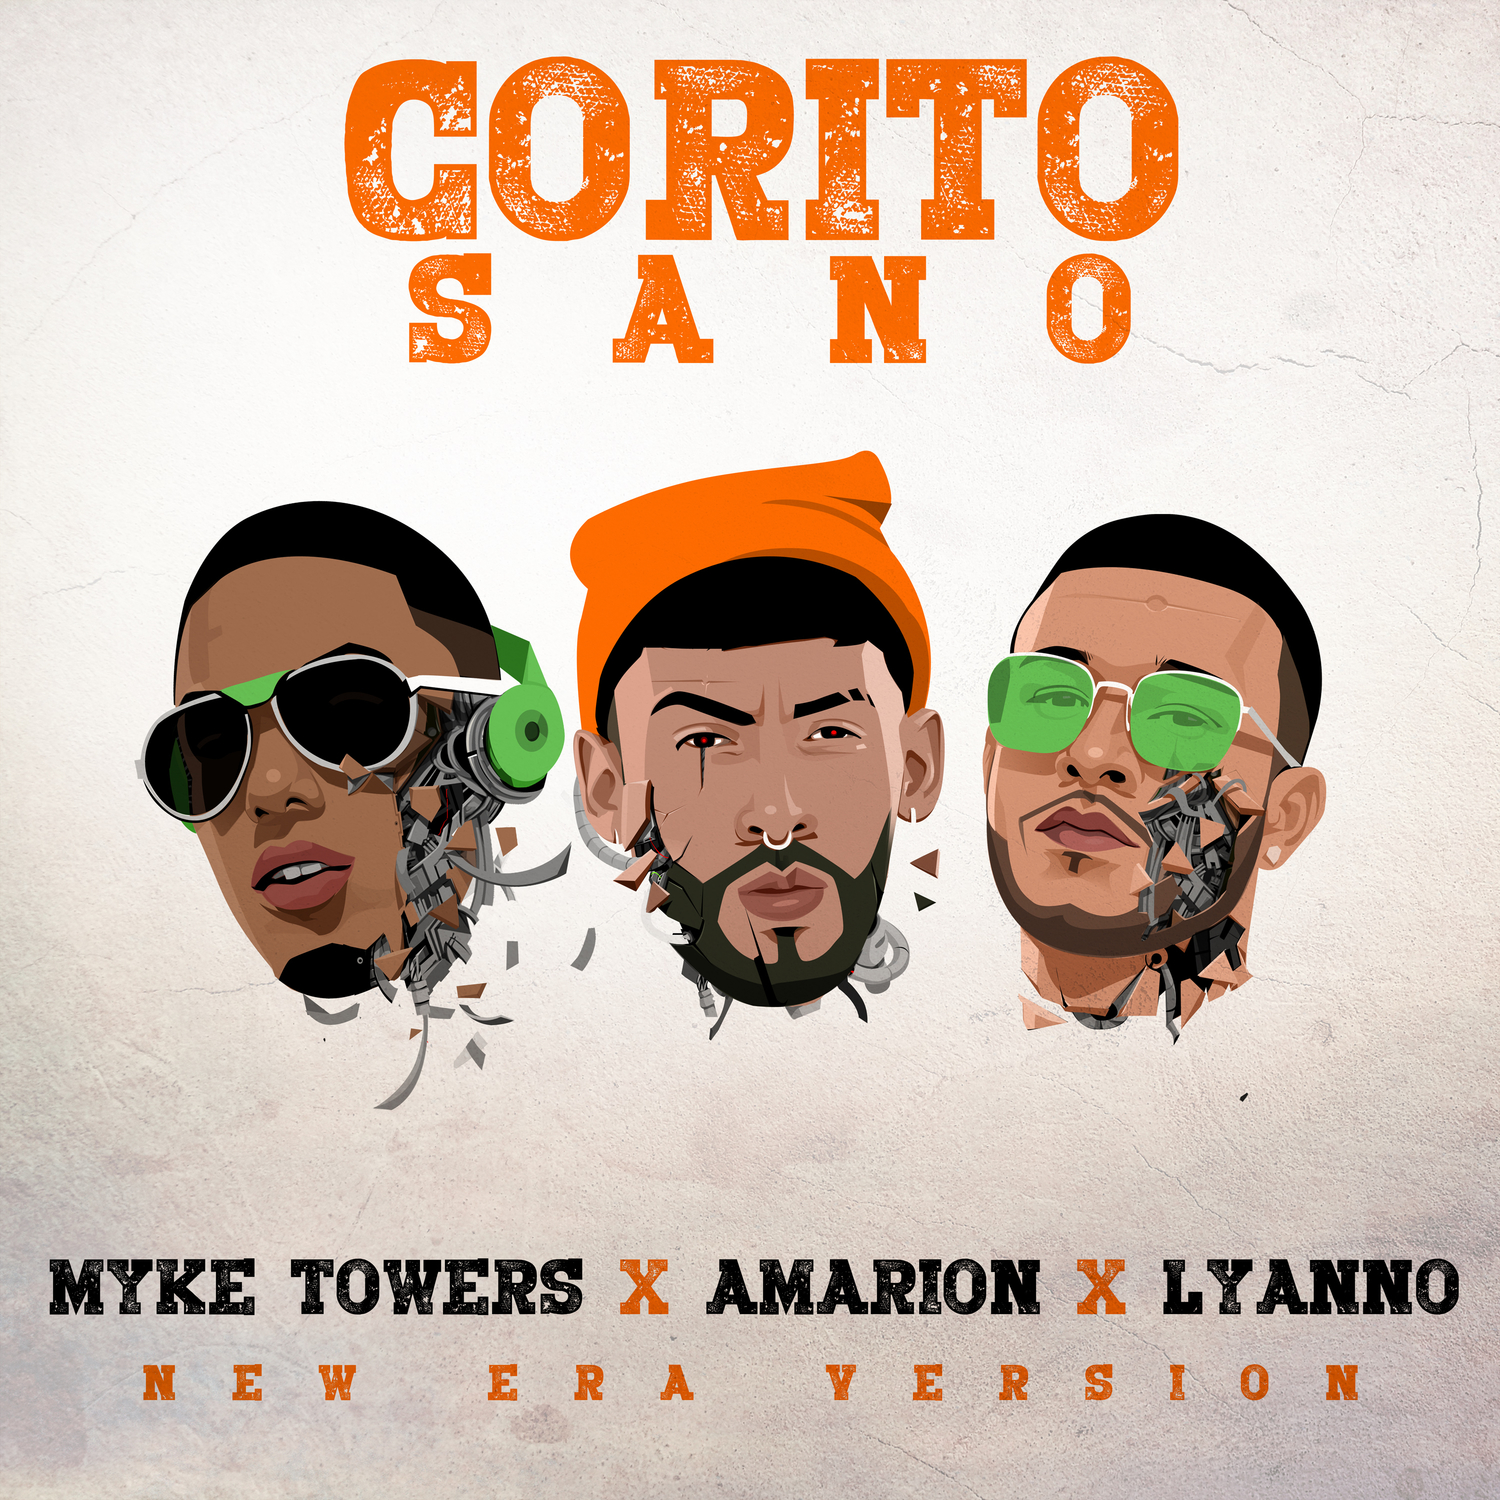 Corito Sano (New Era Version)